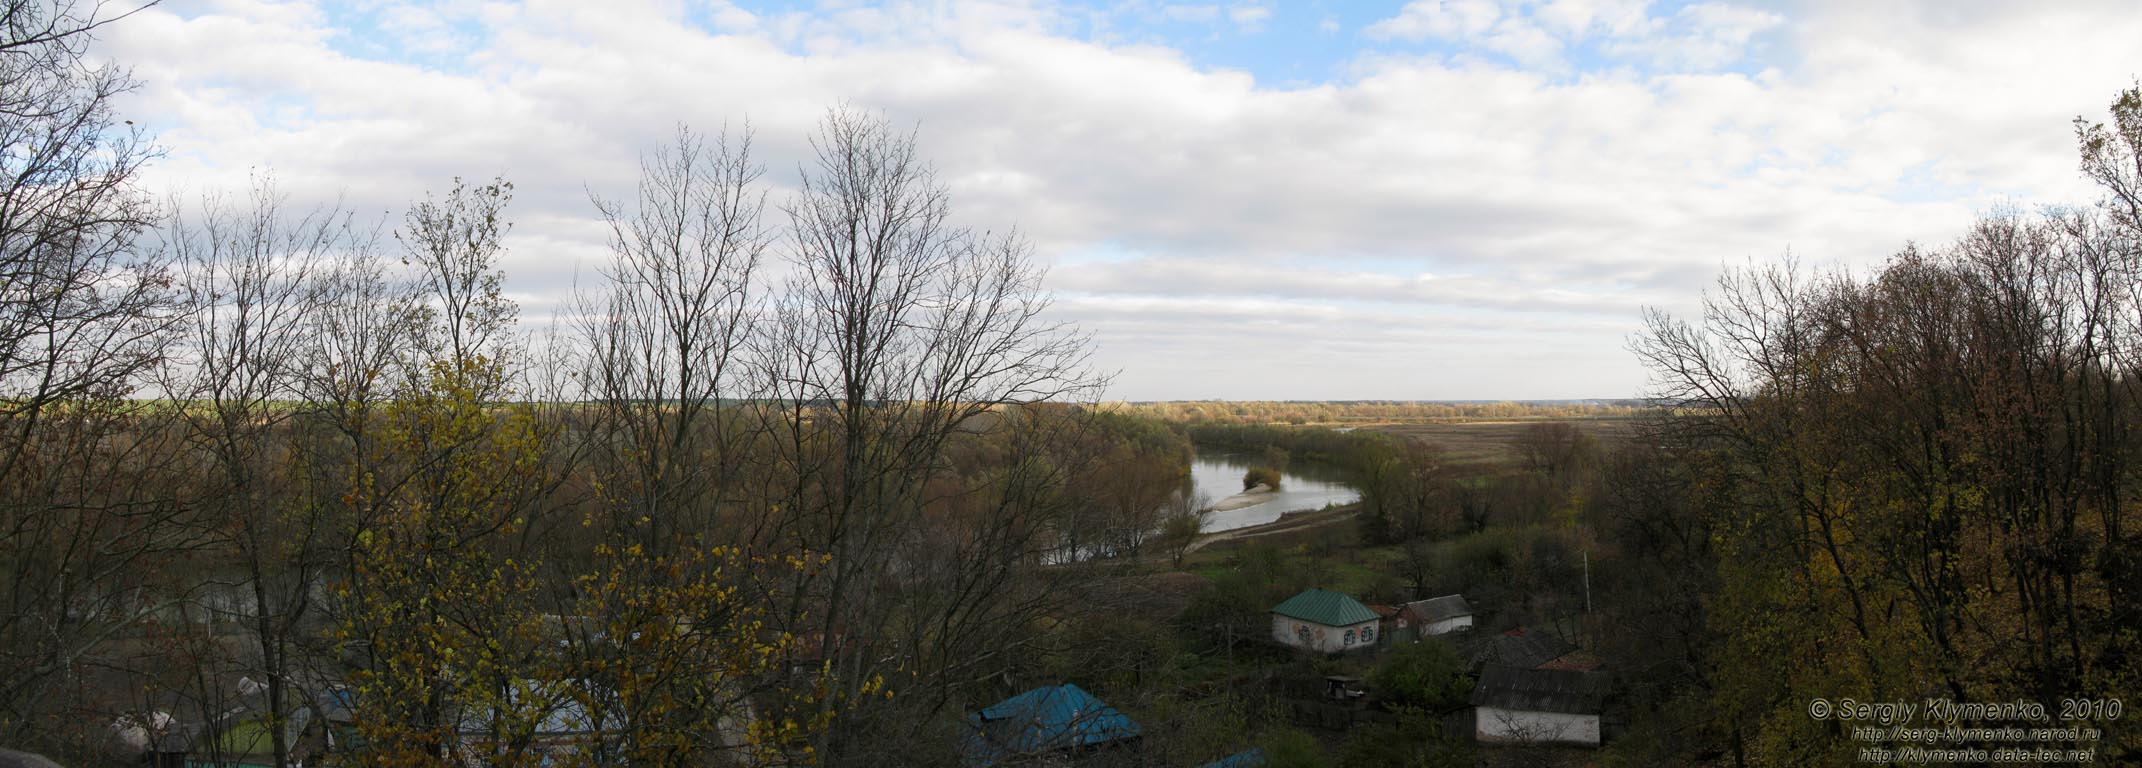 Батурин. Панорама реки Сейм и окружающей местности, вид с обзорной площадки возле памятного креста.